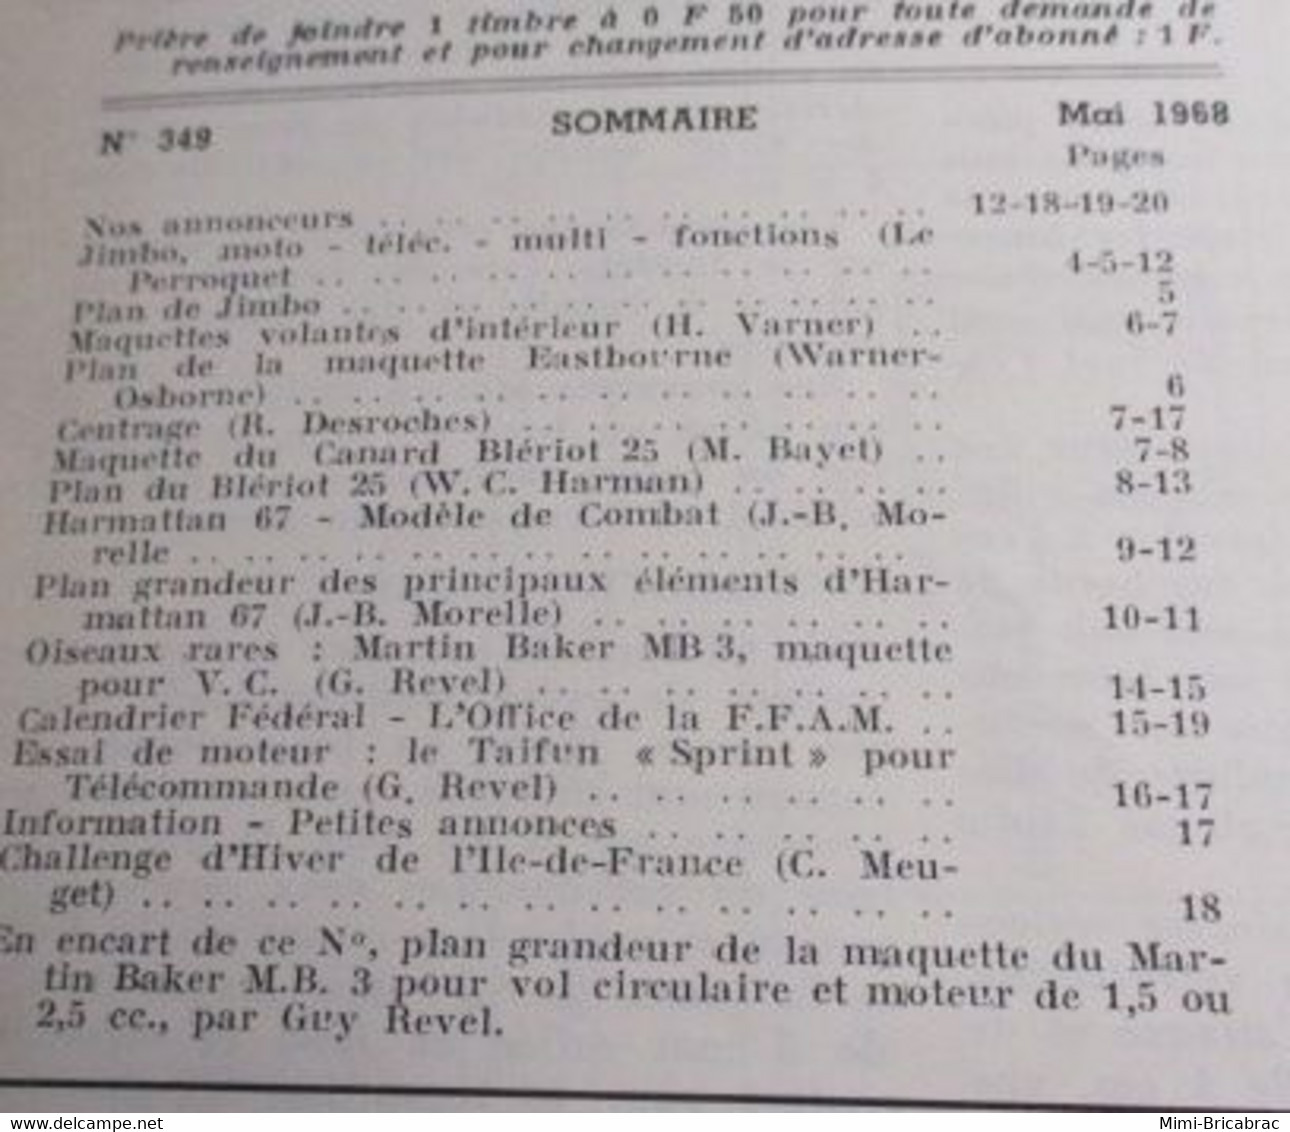 22-A 1e Revue De Maquettisme Années 50/60 : LE MODELE REDUIT D'AVION Avec Plan Inclus N°349 De Mai 1968 - Aerei E Elicotteri